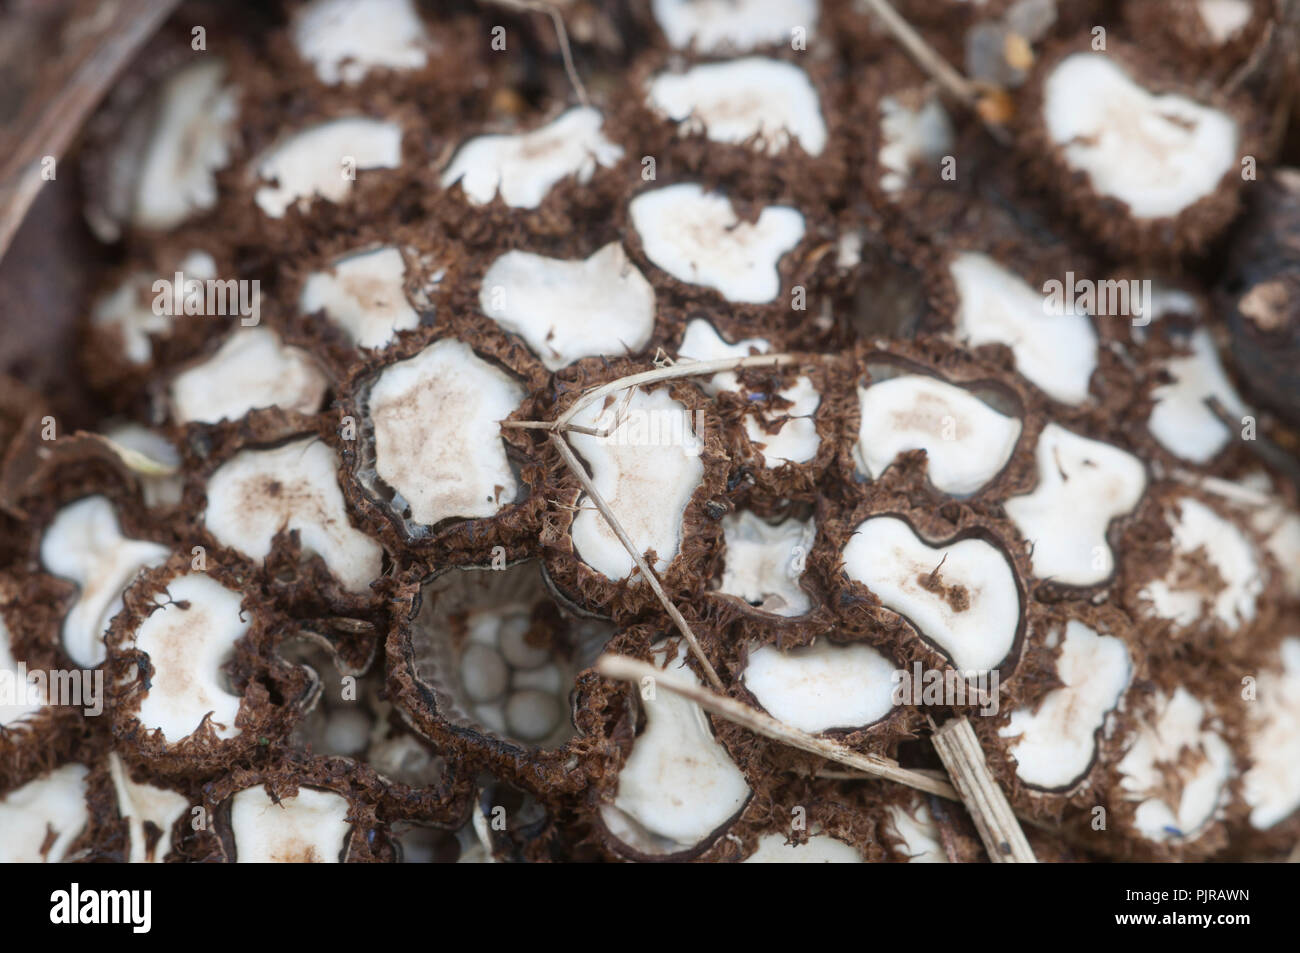 Cyathus striatus champignons sur les feuilles d'automne Banque D'Images